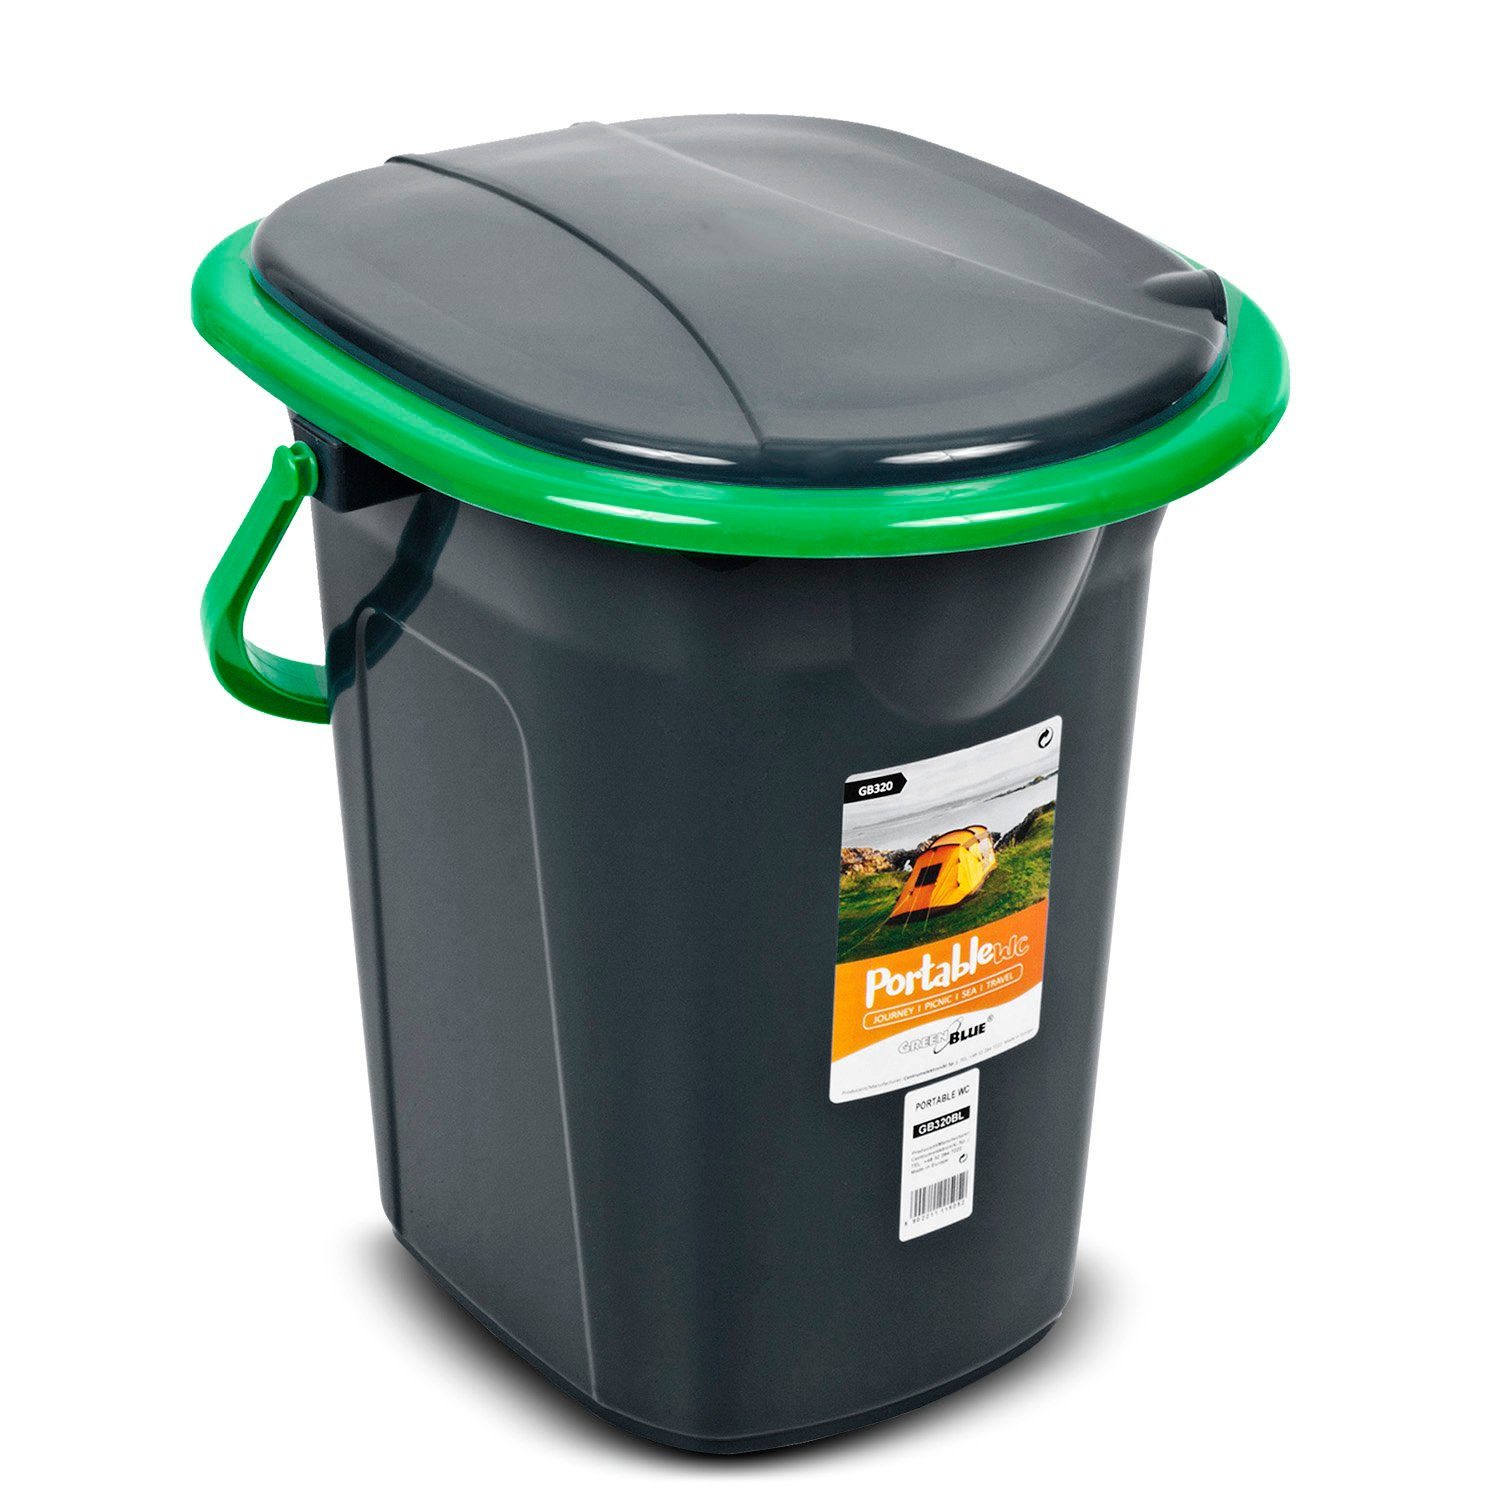 GreenBlue Campingtoilette GB320, mit Tragegriff und Auskipp-Hilfe / Toilettenpapierhalter Schwarz-Grün